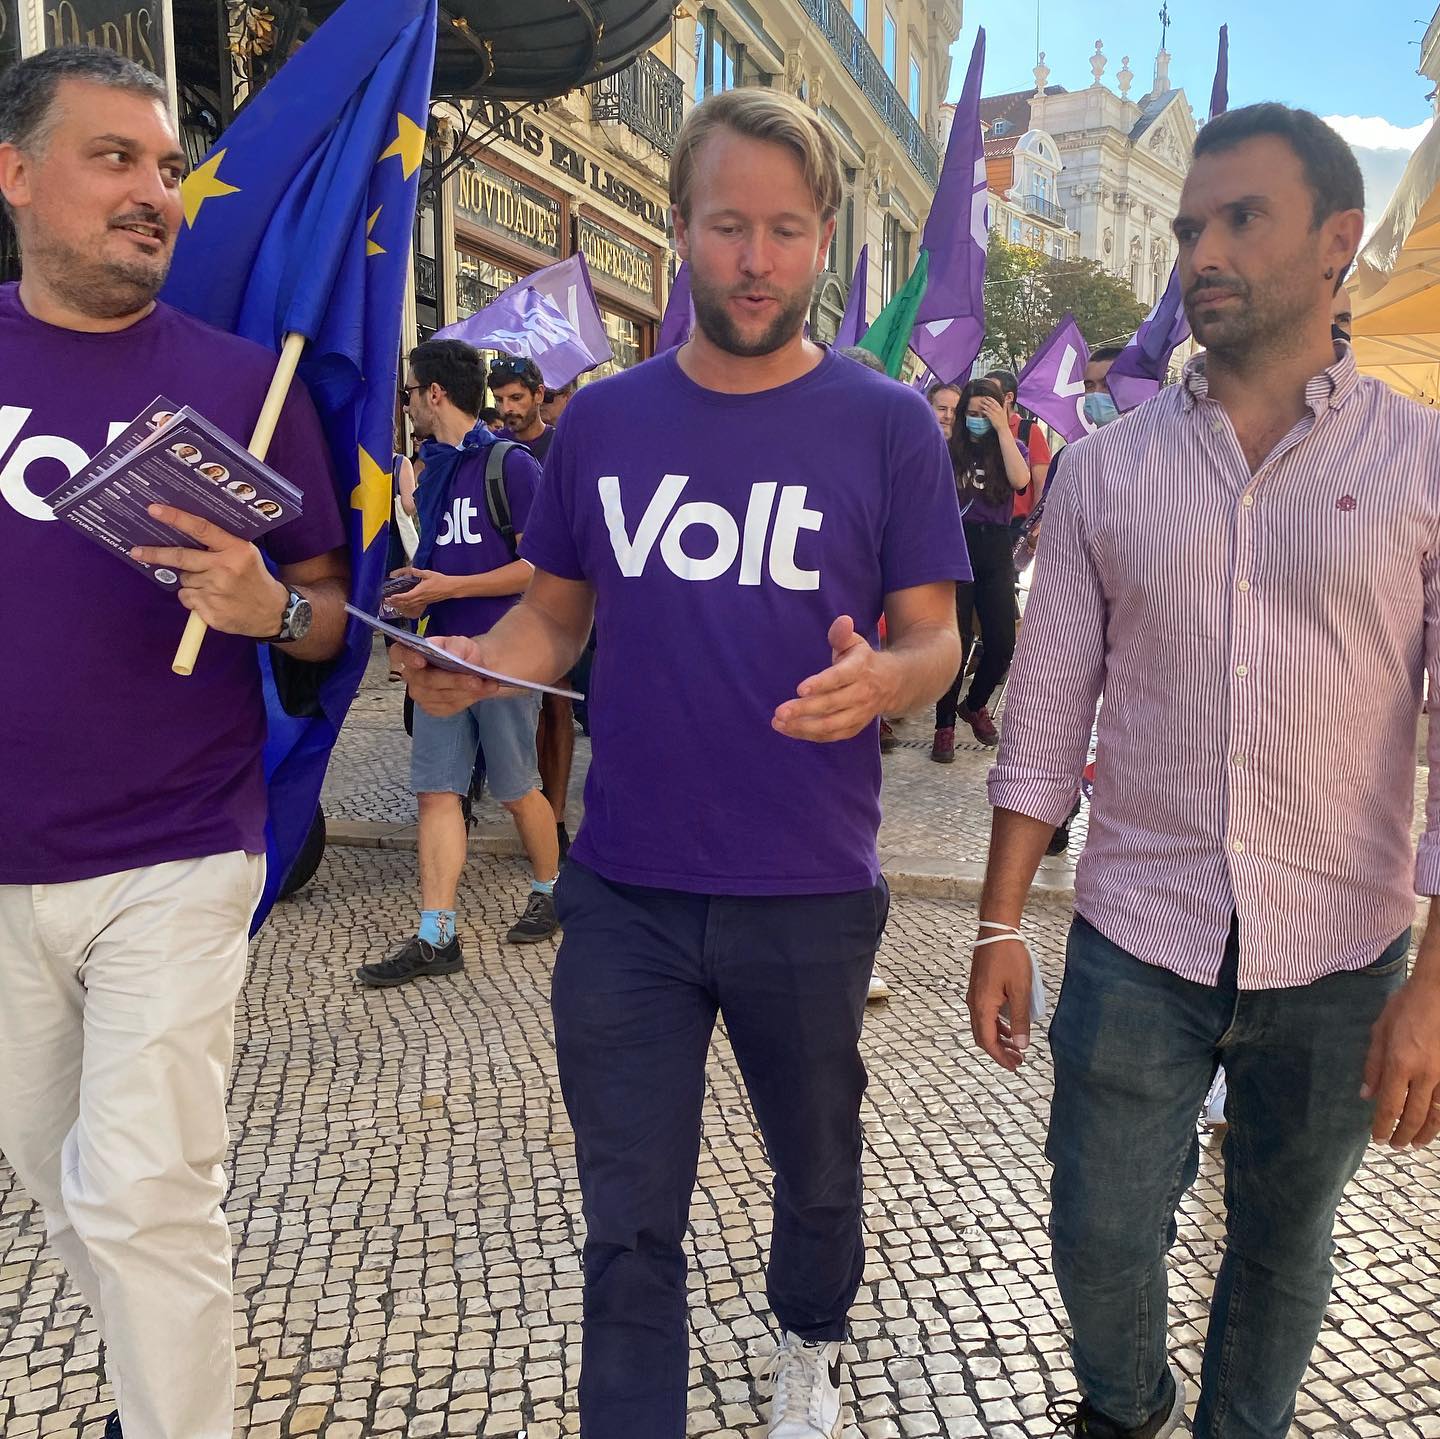 Notícias ao Minuto: 'Francisco Guerreiro apoia candidatura do partido Volt em Lisboa'